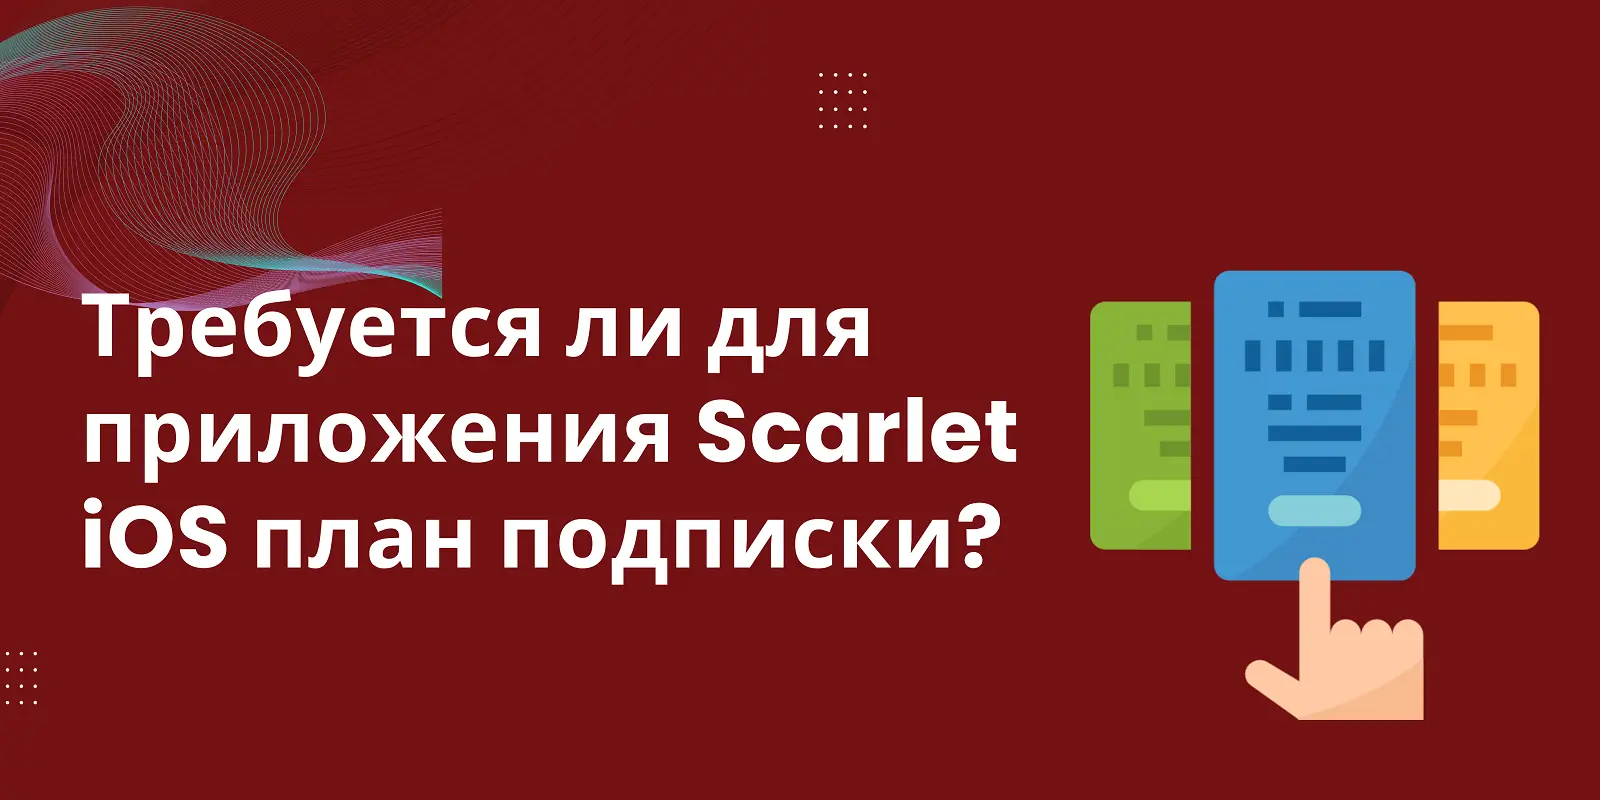 Для приложения Scarlet iOS требуется подписка?